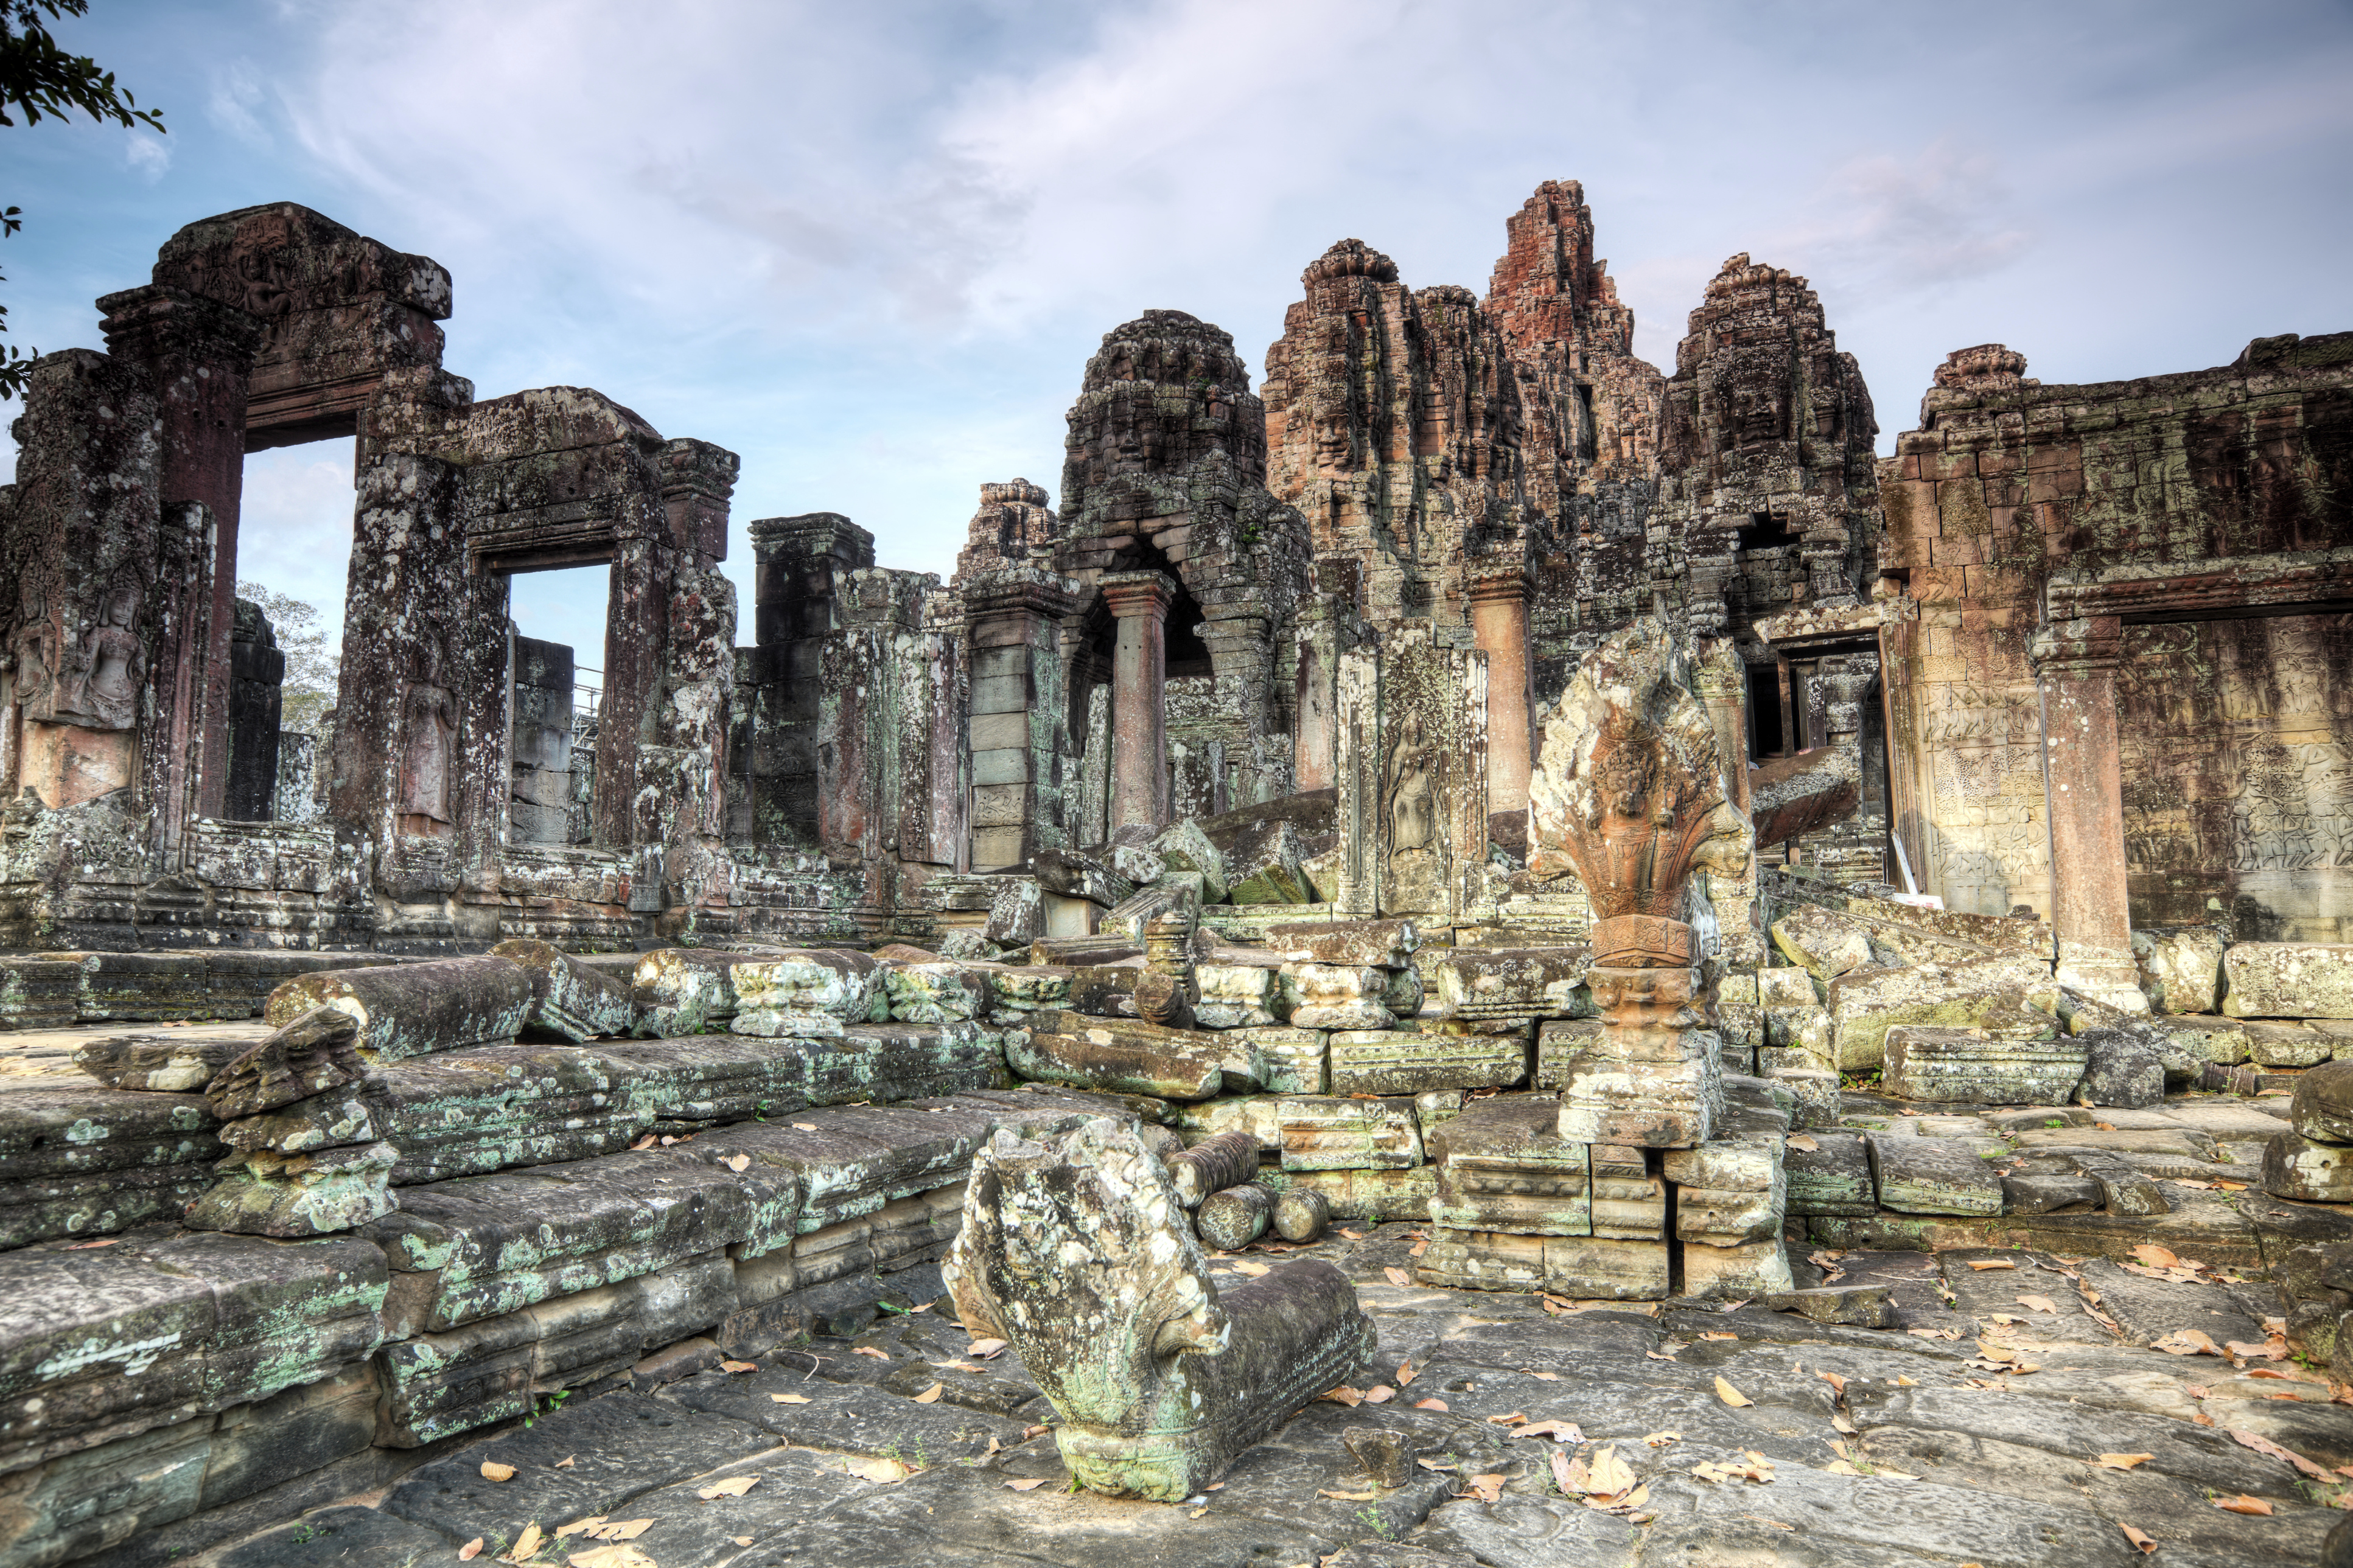 Bayon Temple, Angkor Wat, Siem Reap, Cambodia